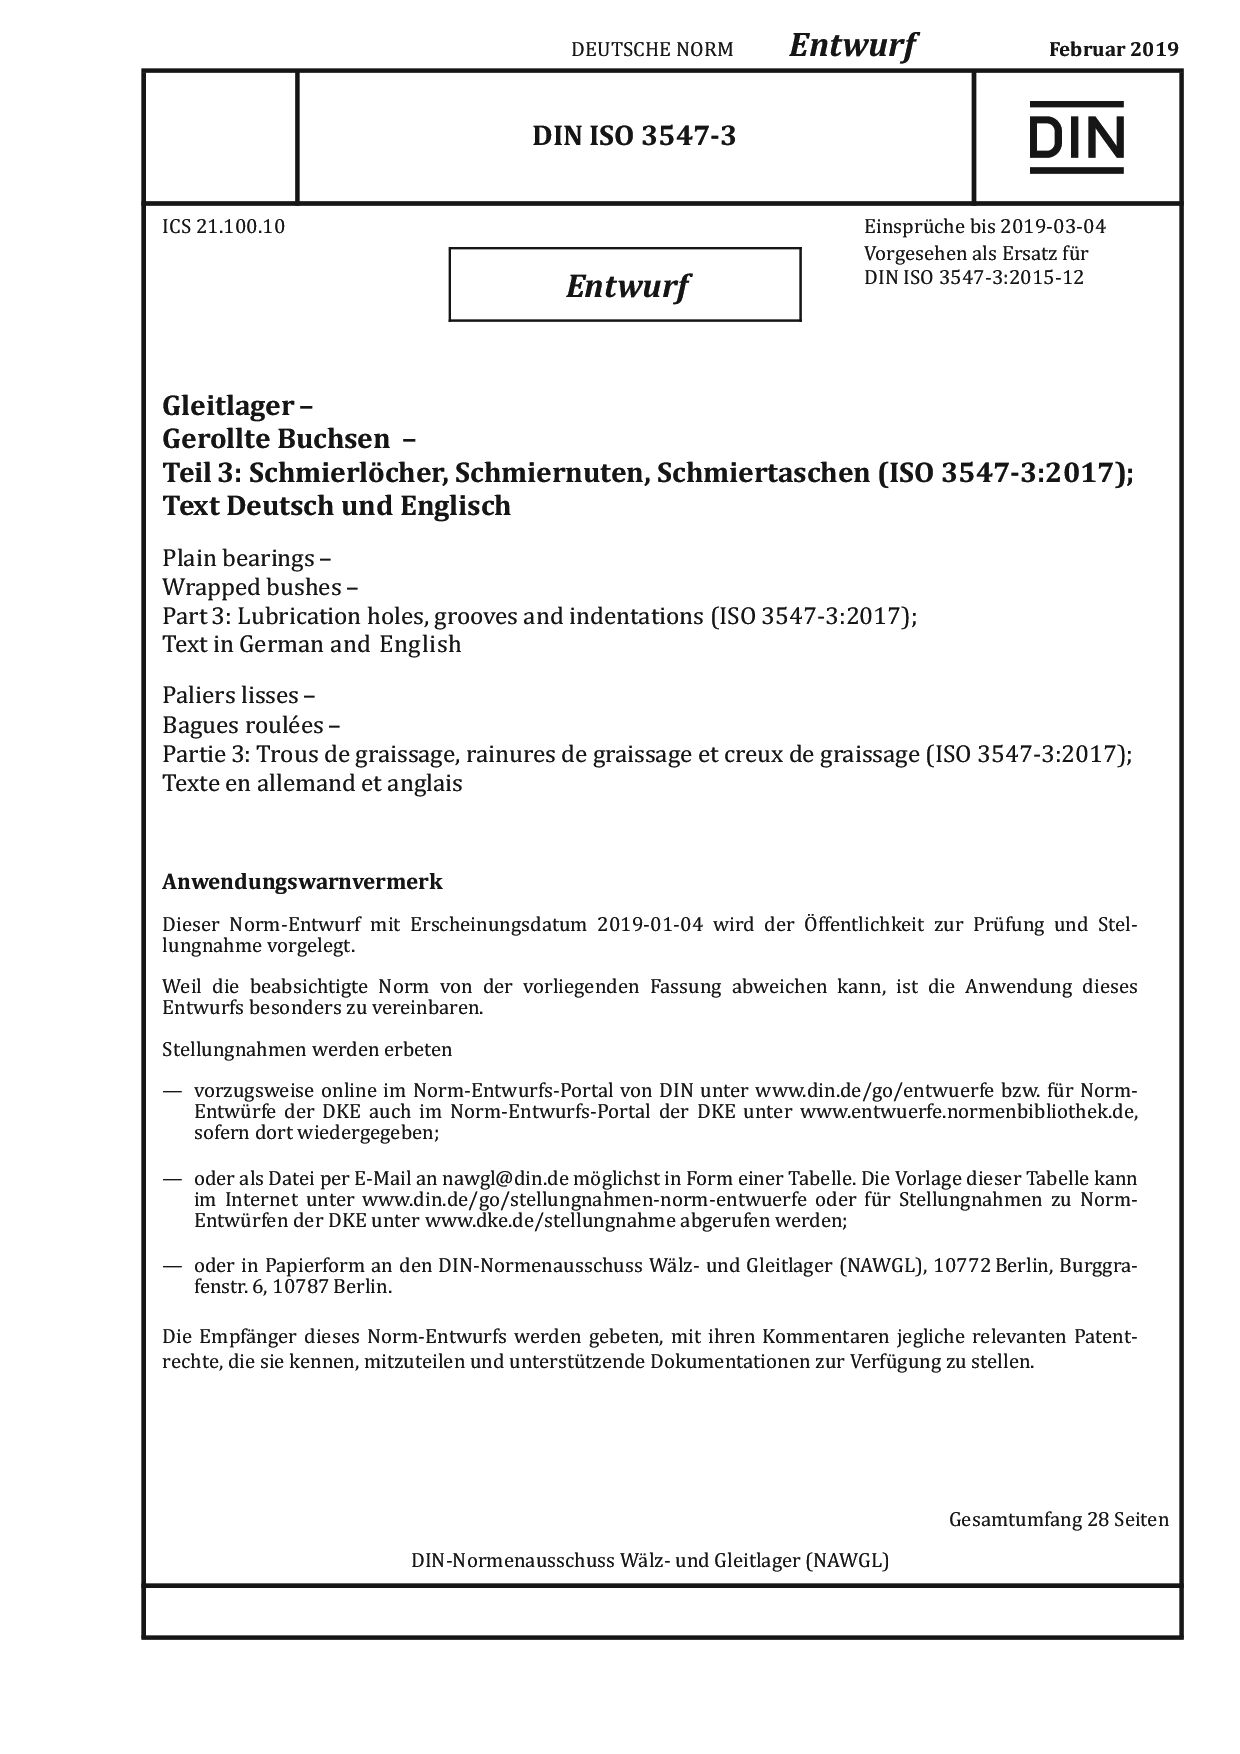 DIN ISO 3547-3 E:2019-02封面图